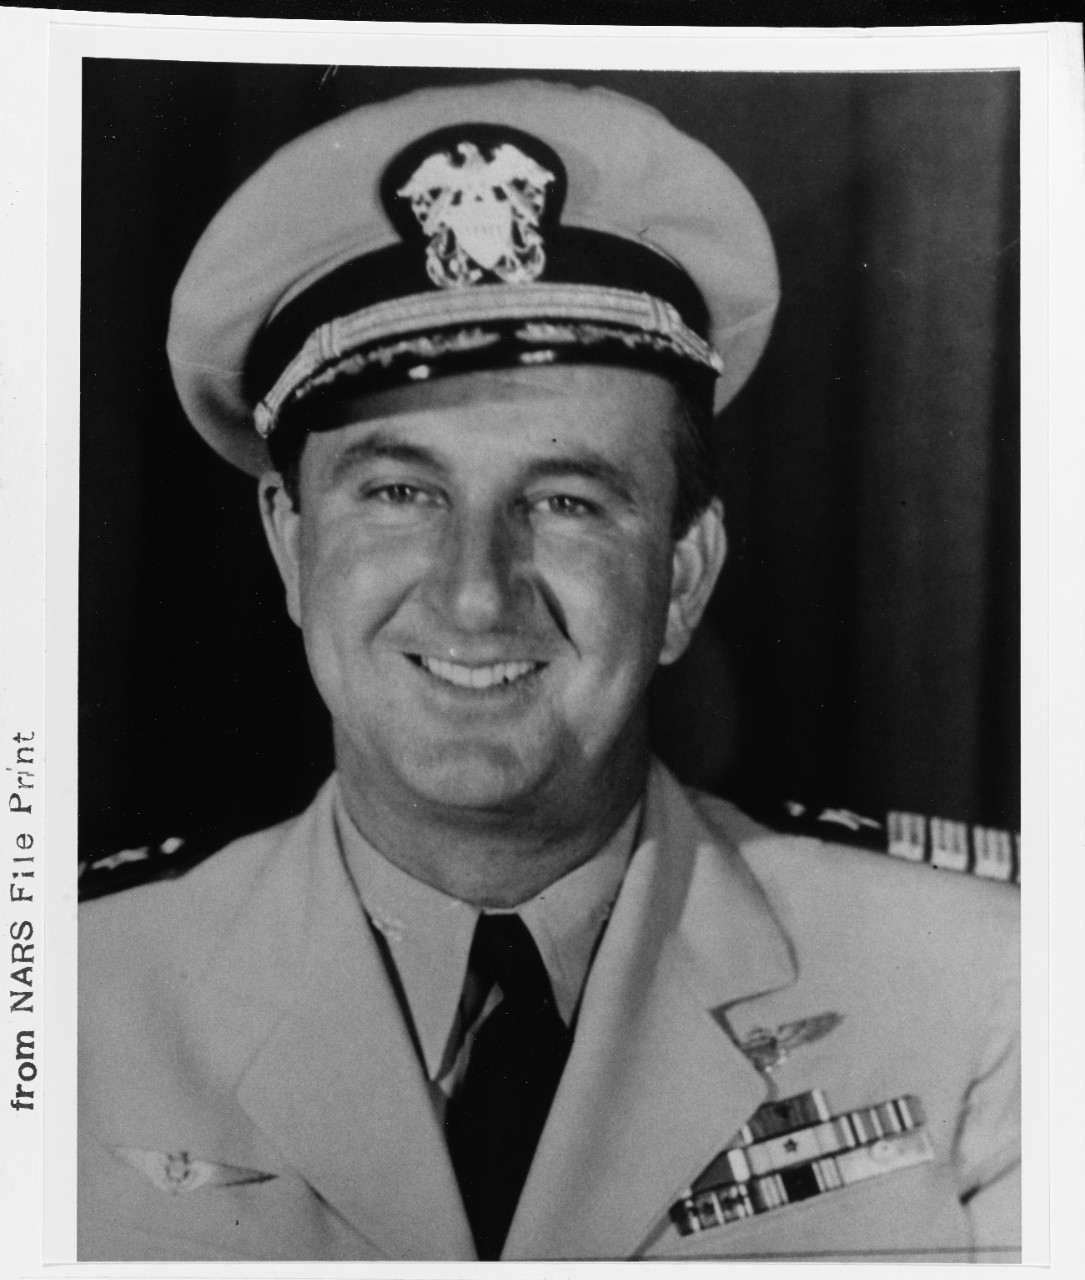 Captain William E. Gentner, USN